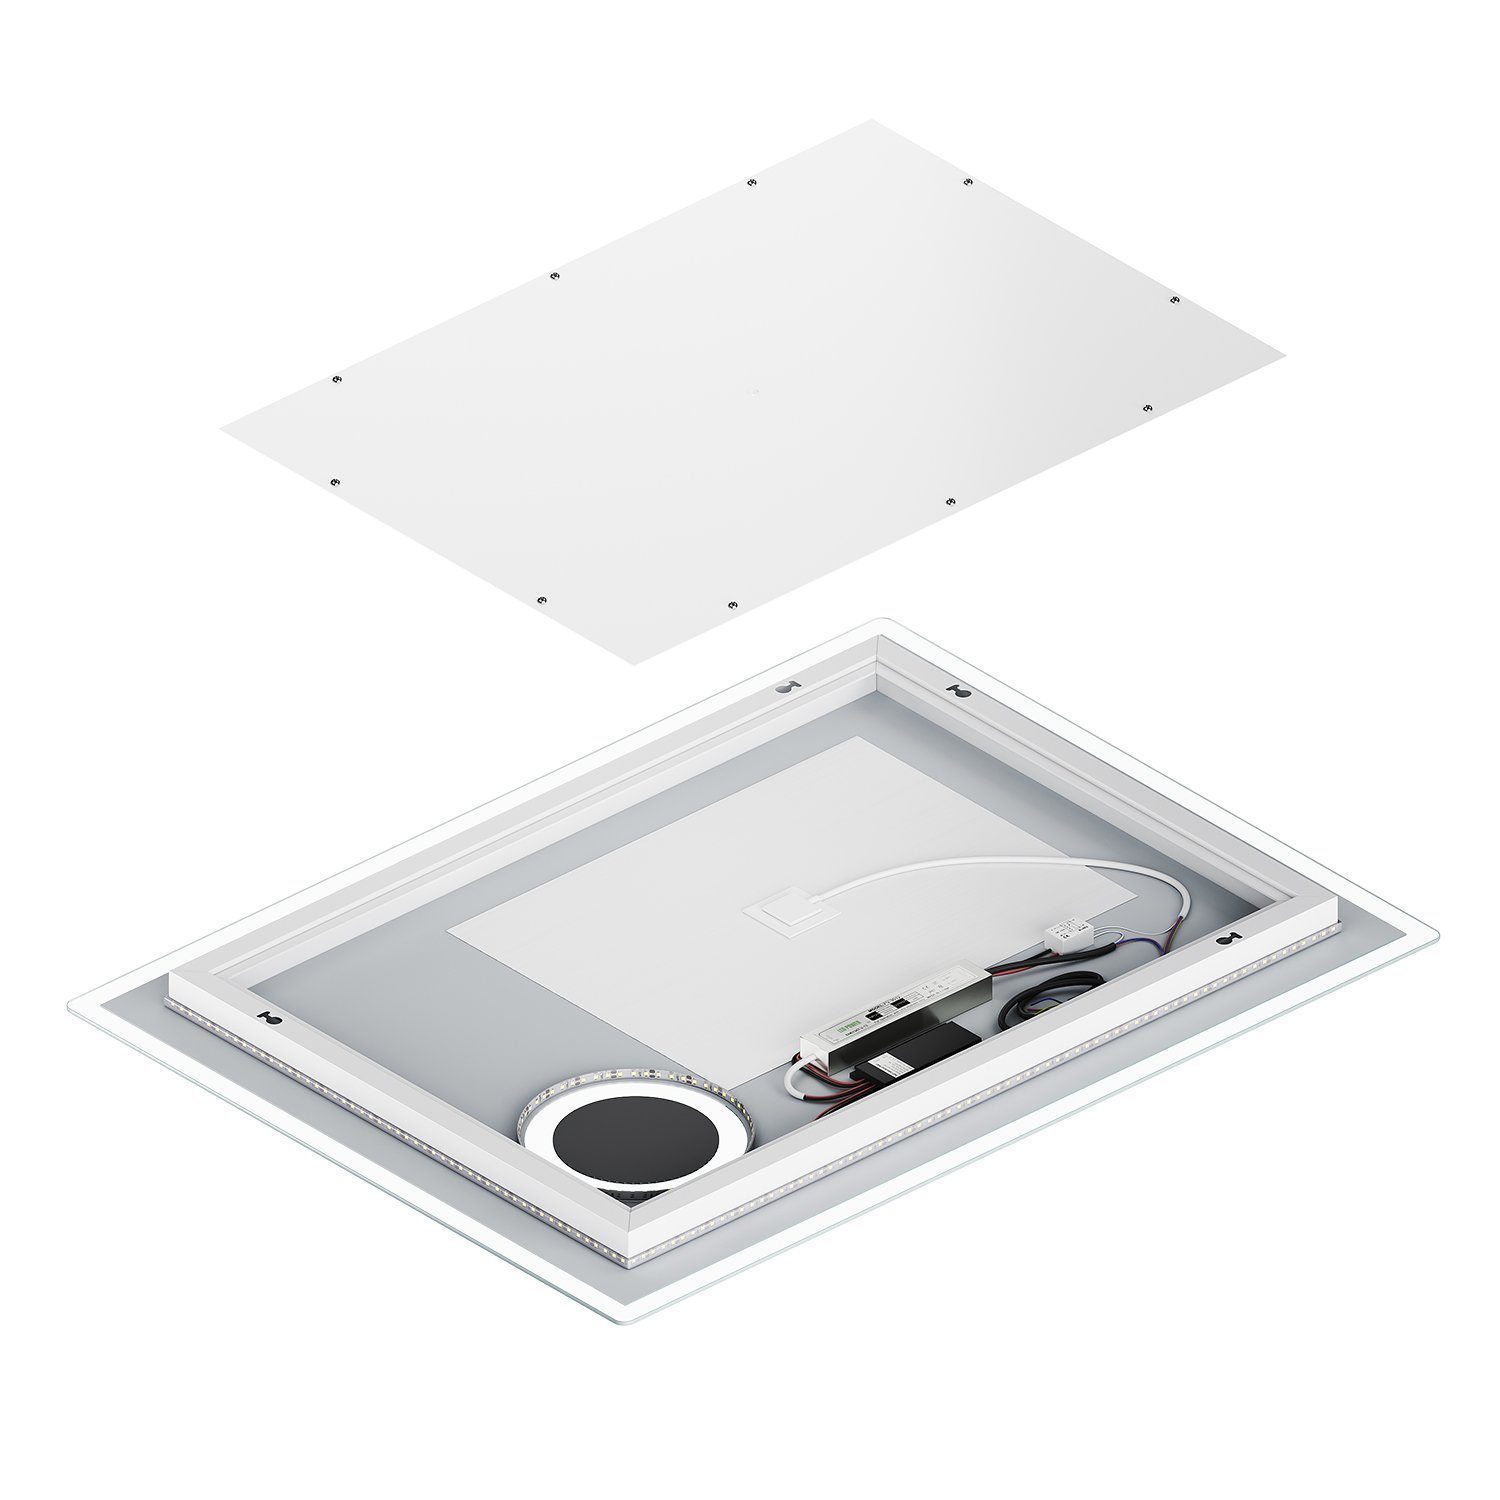 Vergrößerung,100/80cmx60cm, SONNI 3-facher Badezimmerspiegel mit Badspiegel LED mit